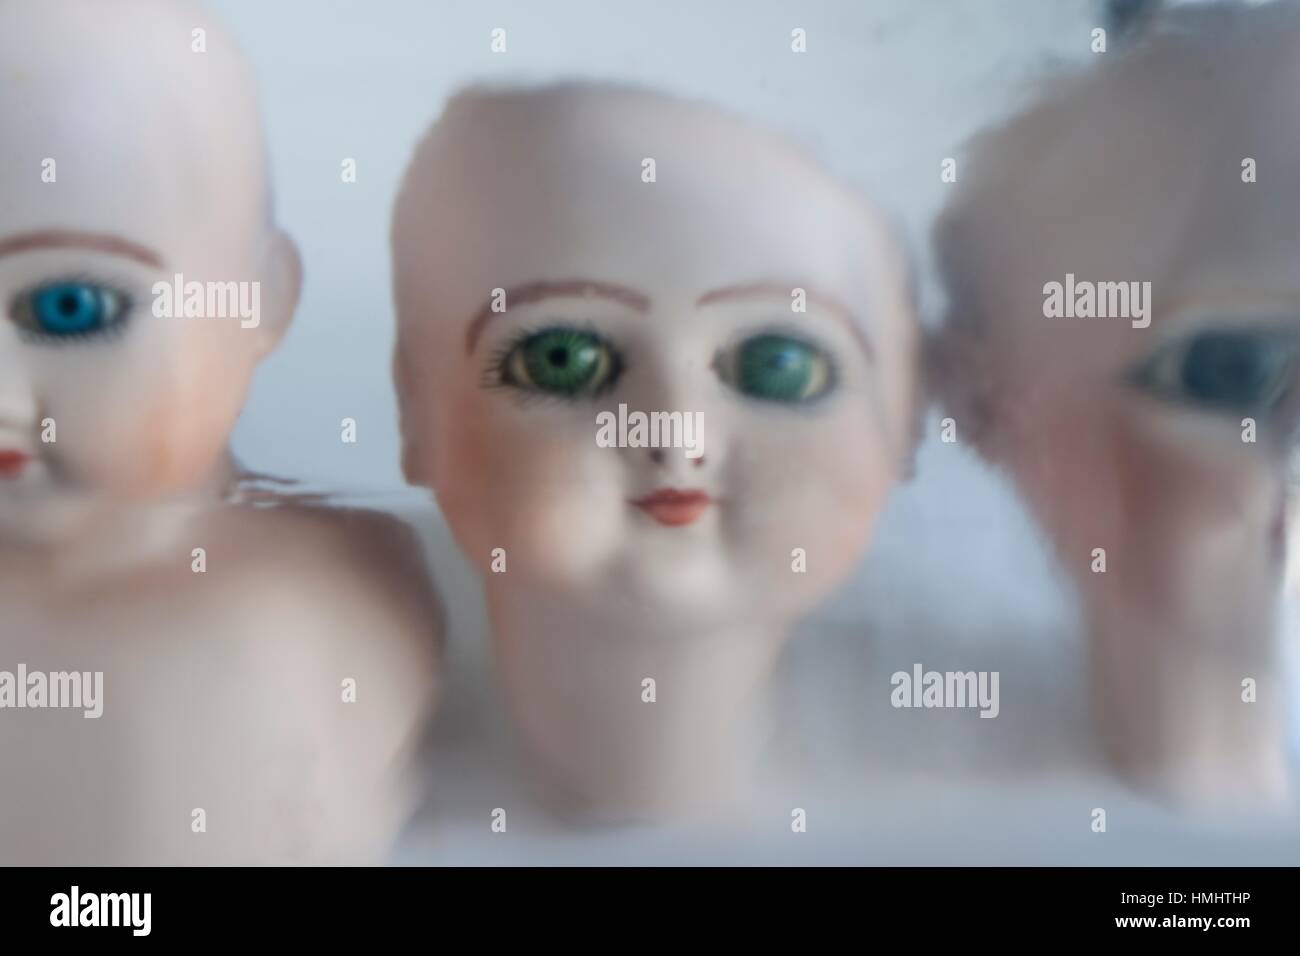 Primer plano de tres cabezas de muñecas de porcelana con ojos verdes,  mirando fijamente a la camara. , Close up of three porcelain doll heads  with Stock Photo - Alamy